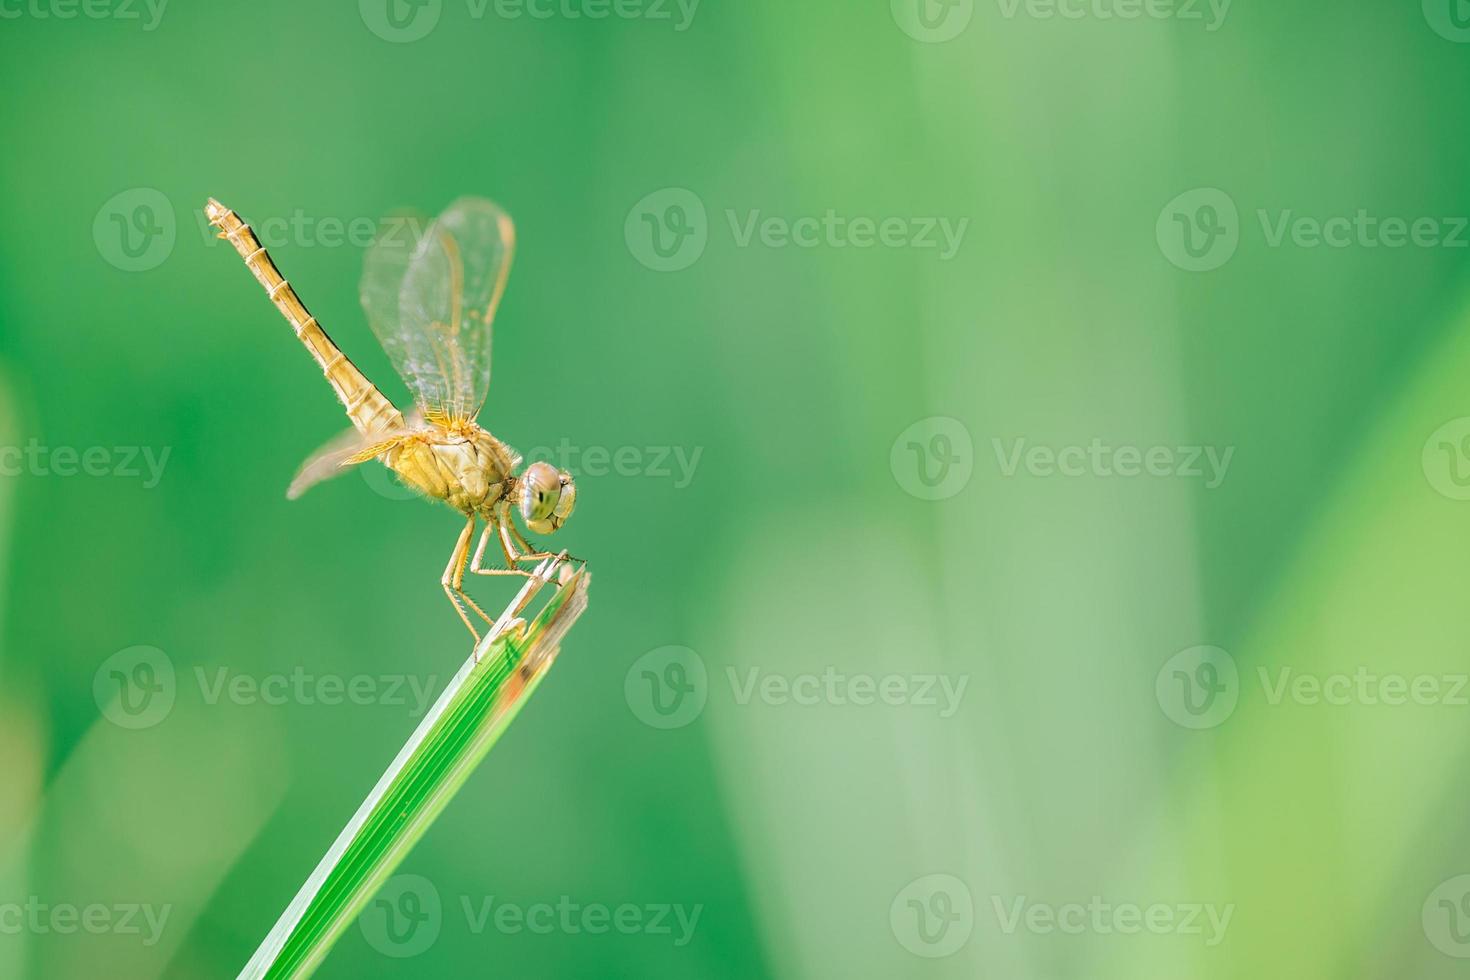 libélula pega no topo da grama, o que significa acalmar e relaxar. Imagem para um fundo verde natural. foto